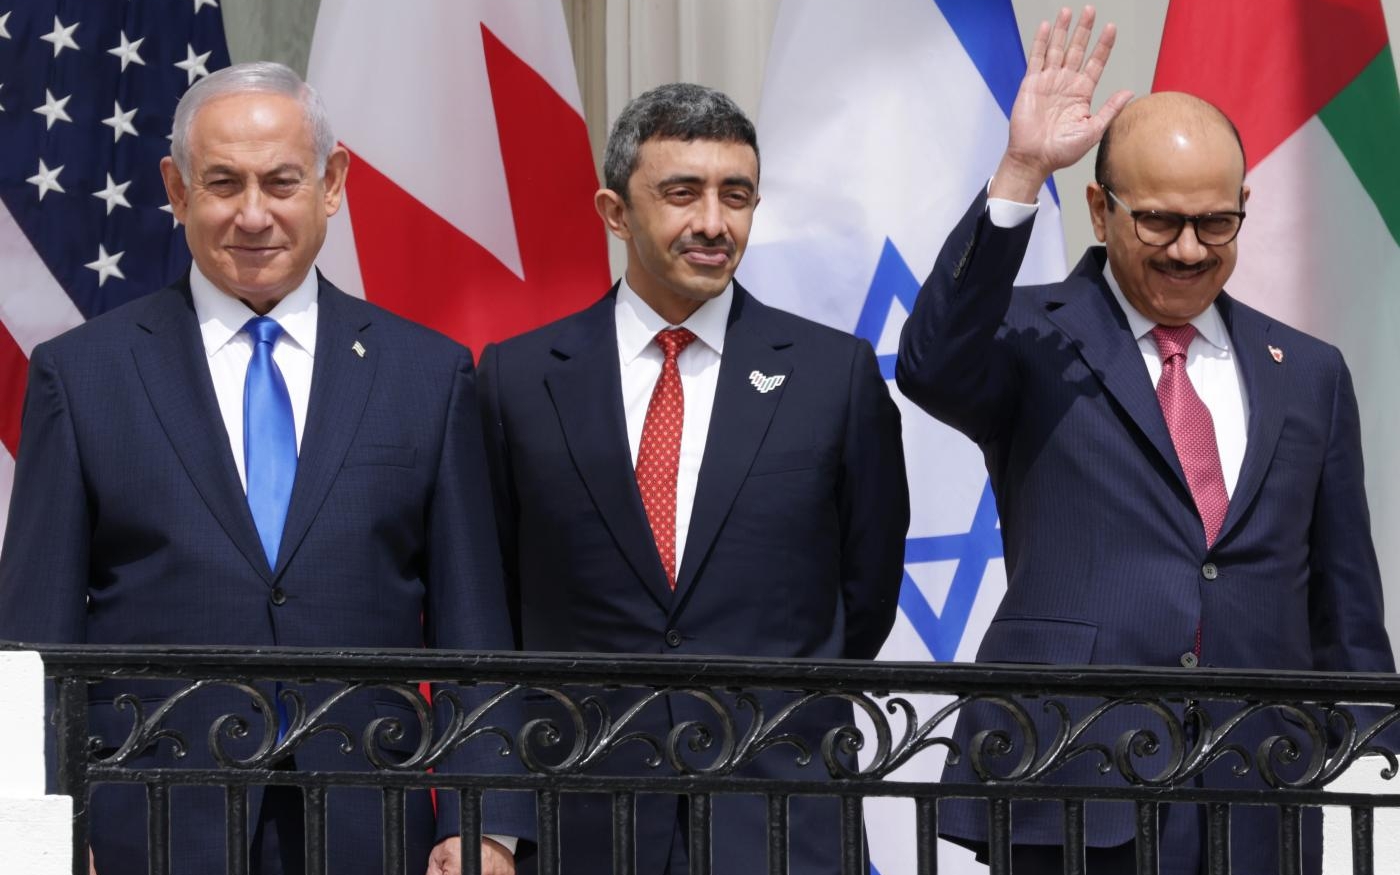 Le Premier ministre israélien ainsi que les ministres des Affaires étrangères émirati et bahreïni participent à la cérémonie de signature des accords d’Abraham à Washington, le 15 septembre (AFP)